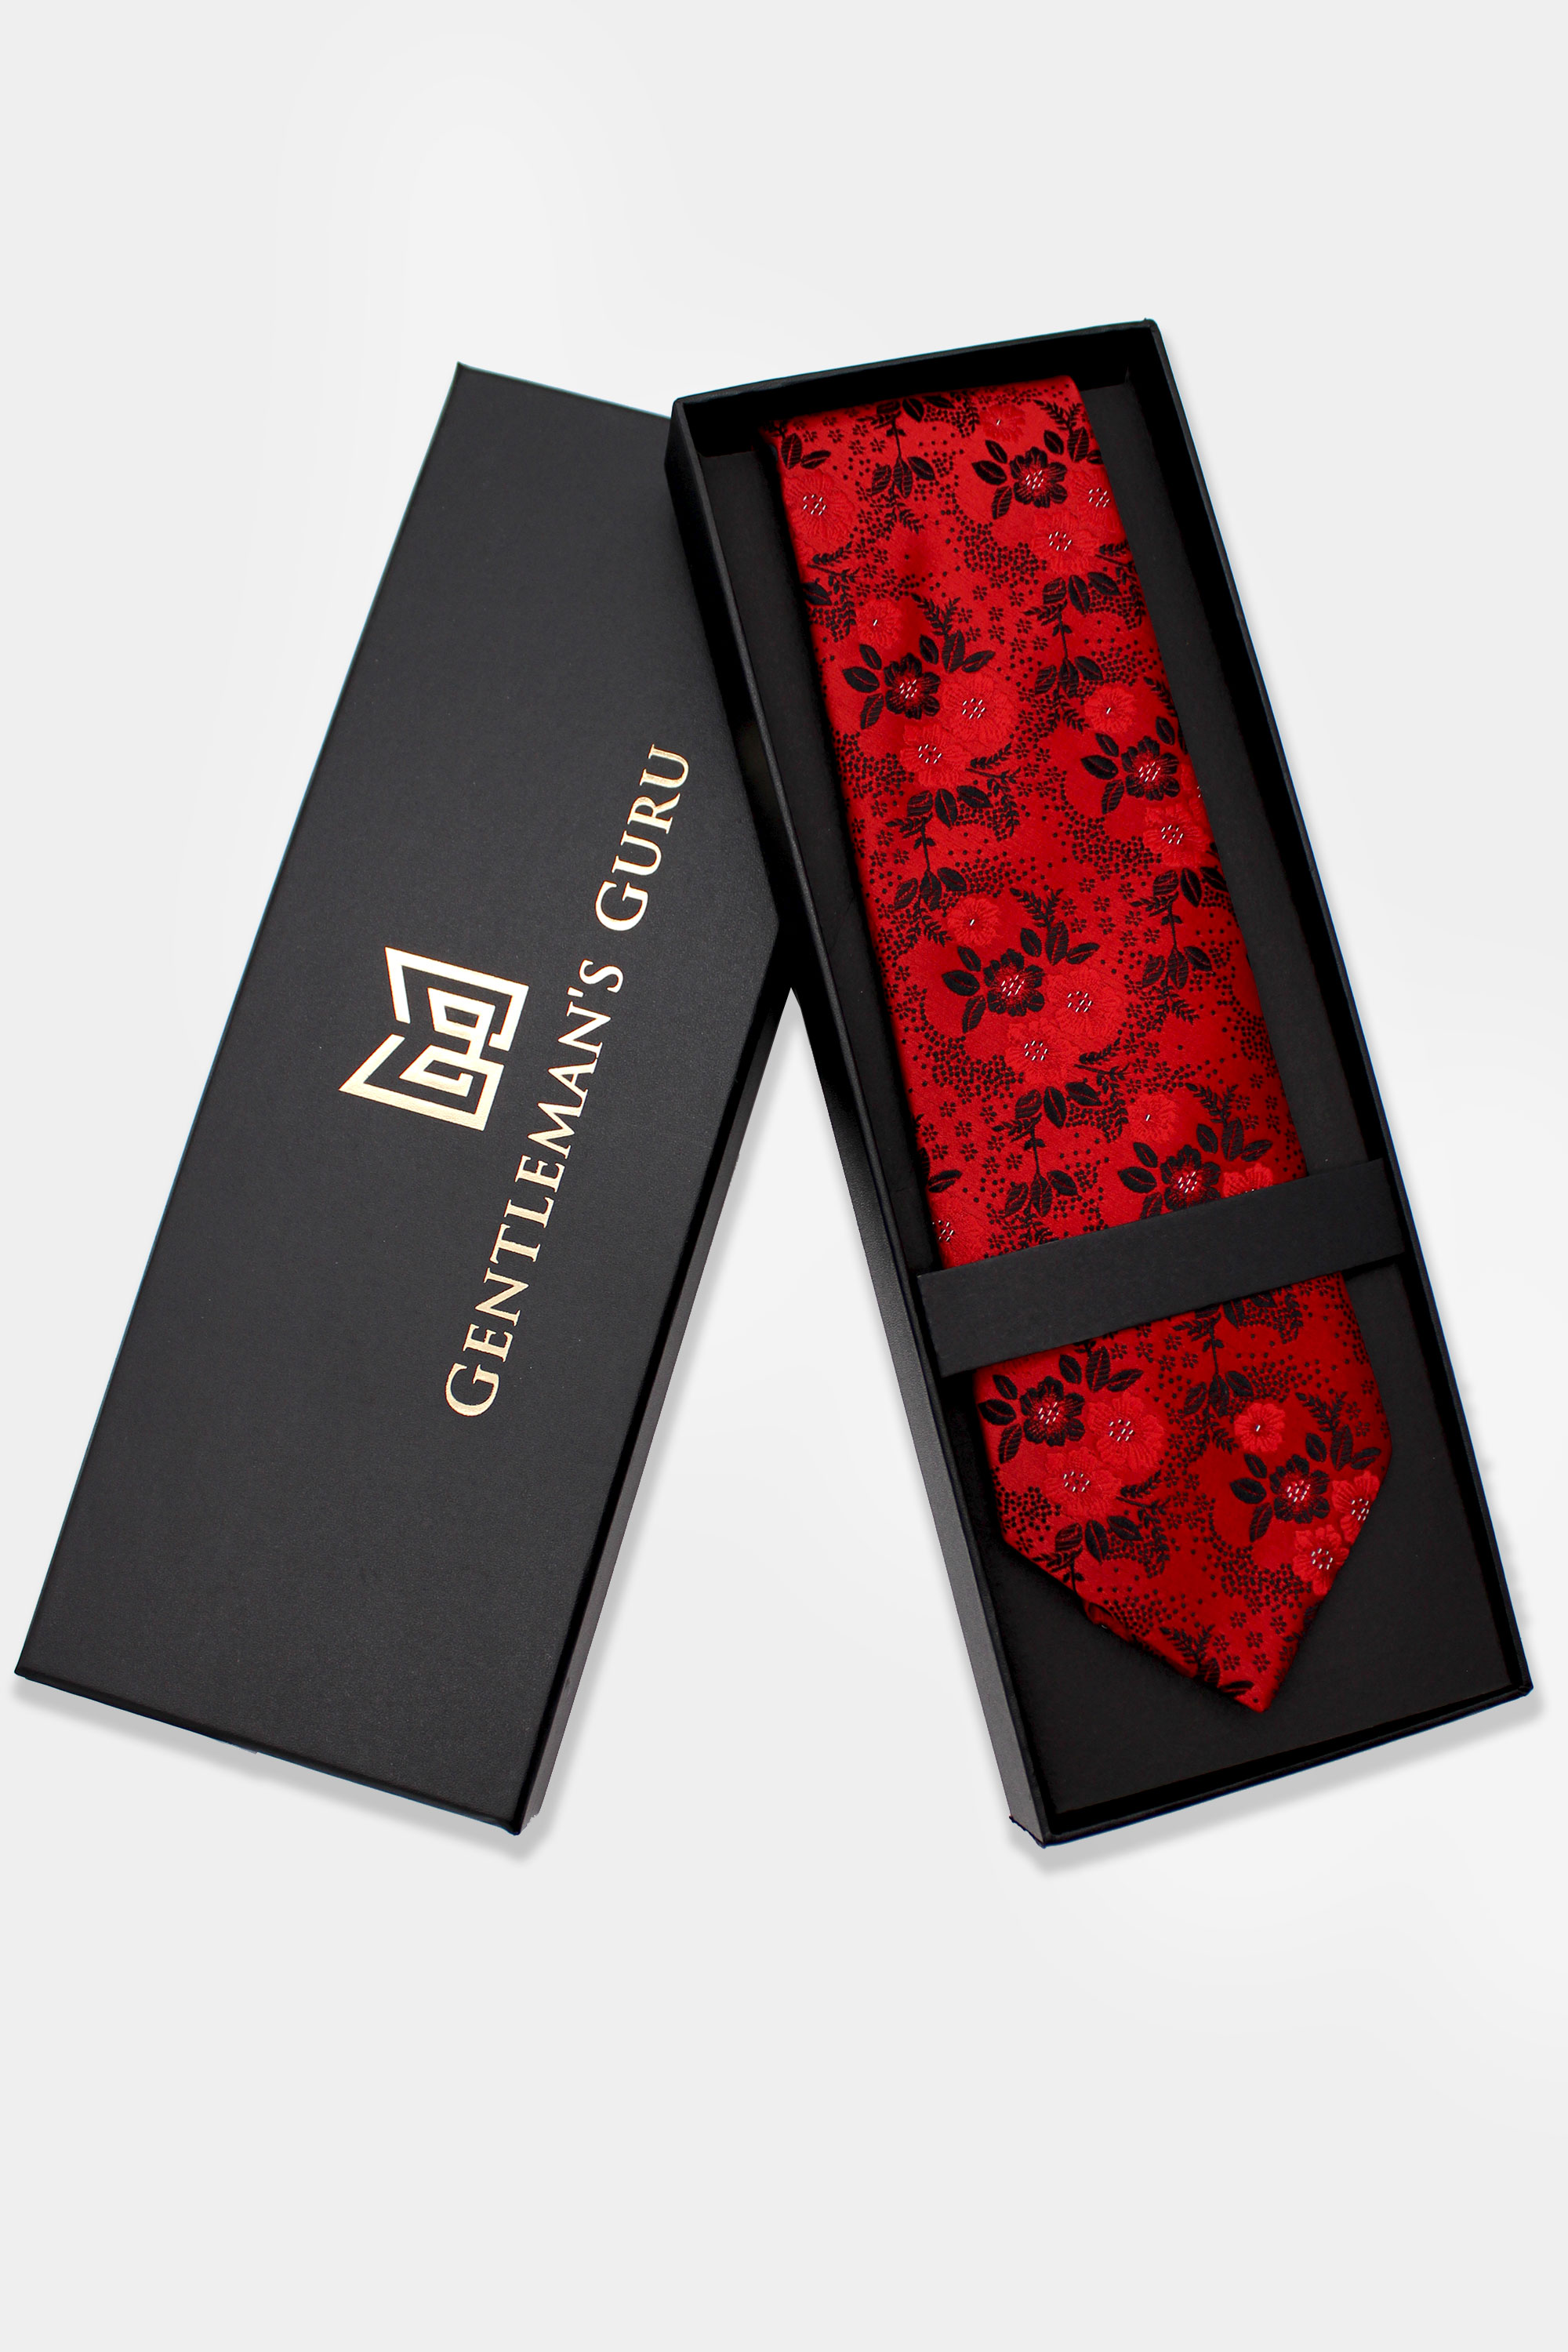 Red-Floral-Necktie-Lavender-Tie-Wedding-from-Gentlemansguru.com